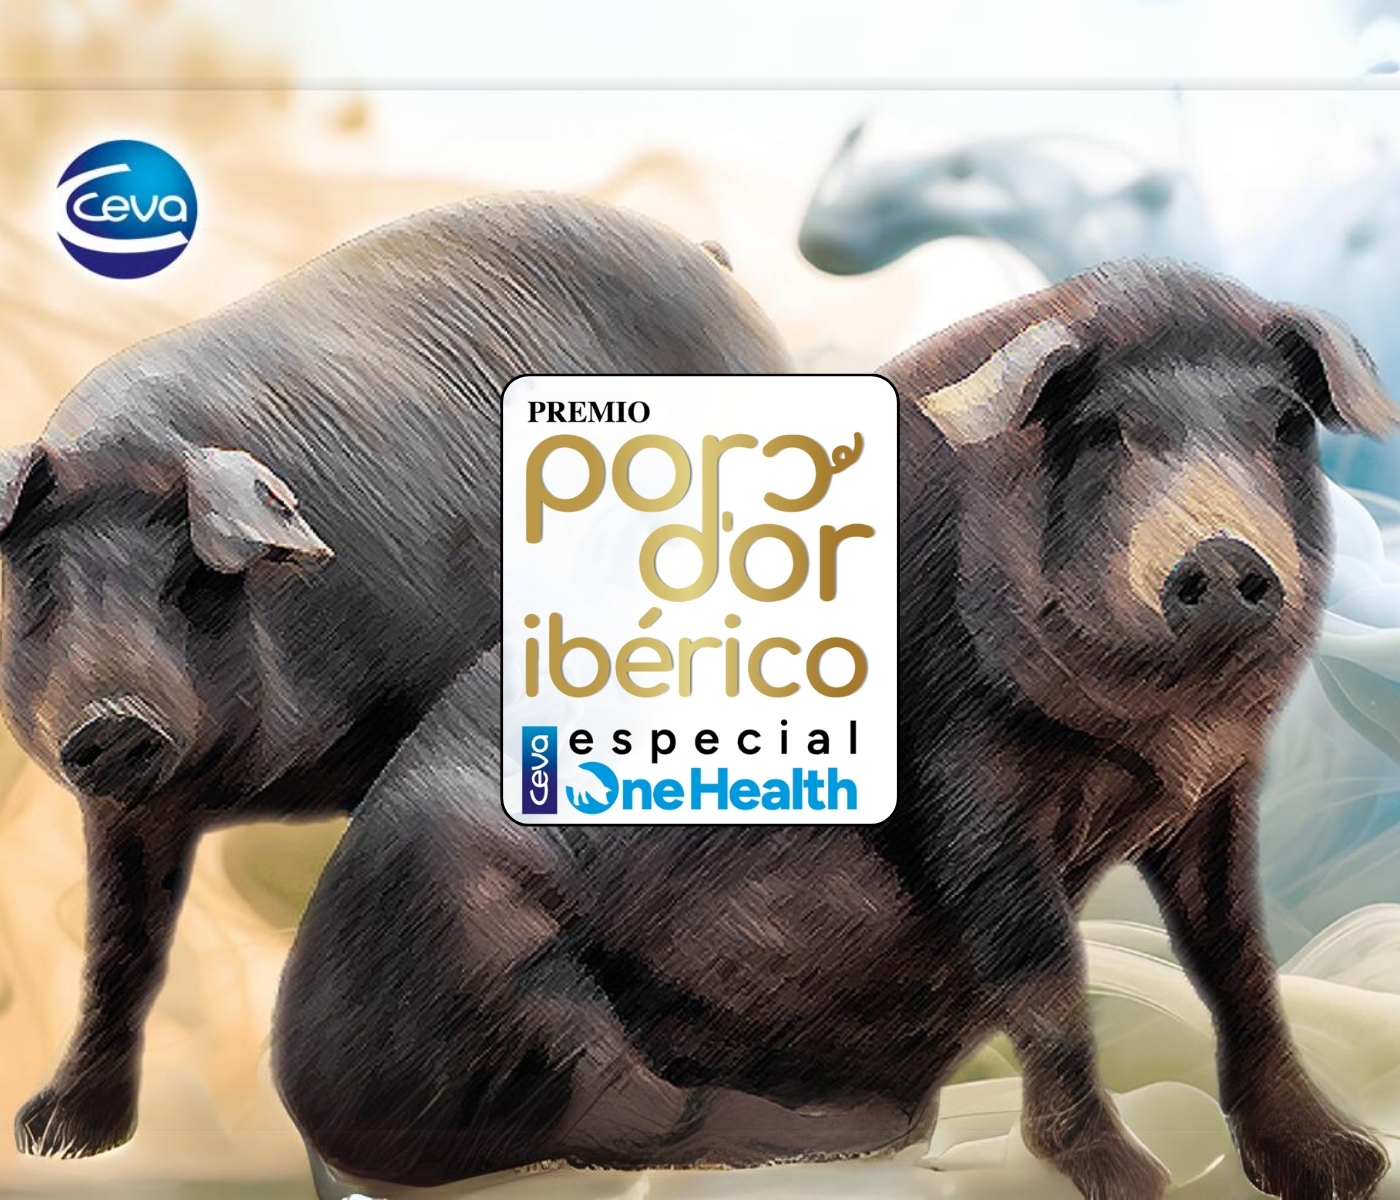 Ceva Salud Animal convoca el Premio Porc d’Or Ibérico especial One Health